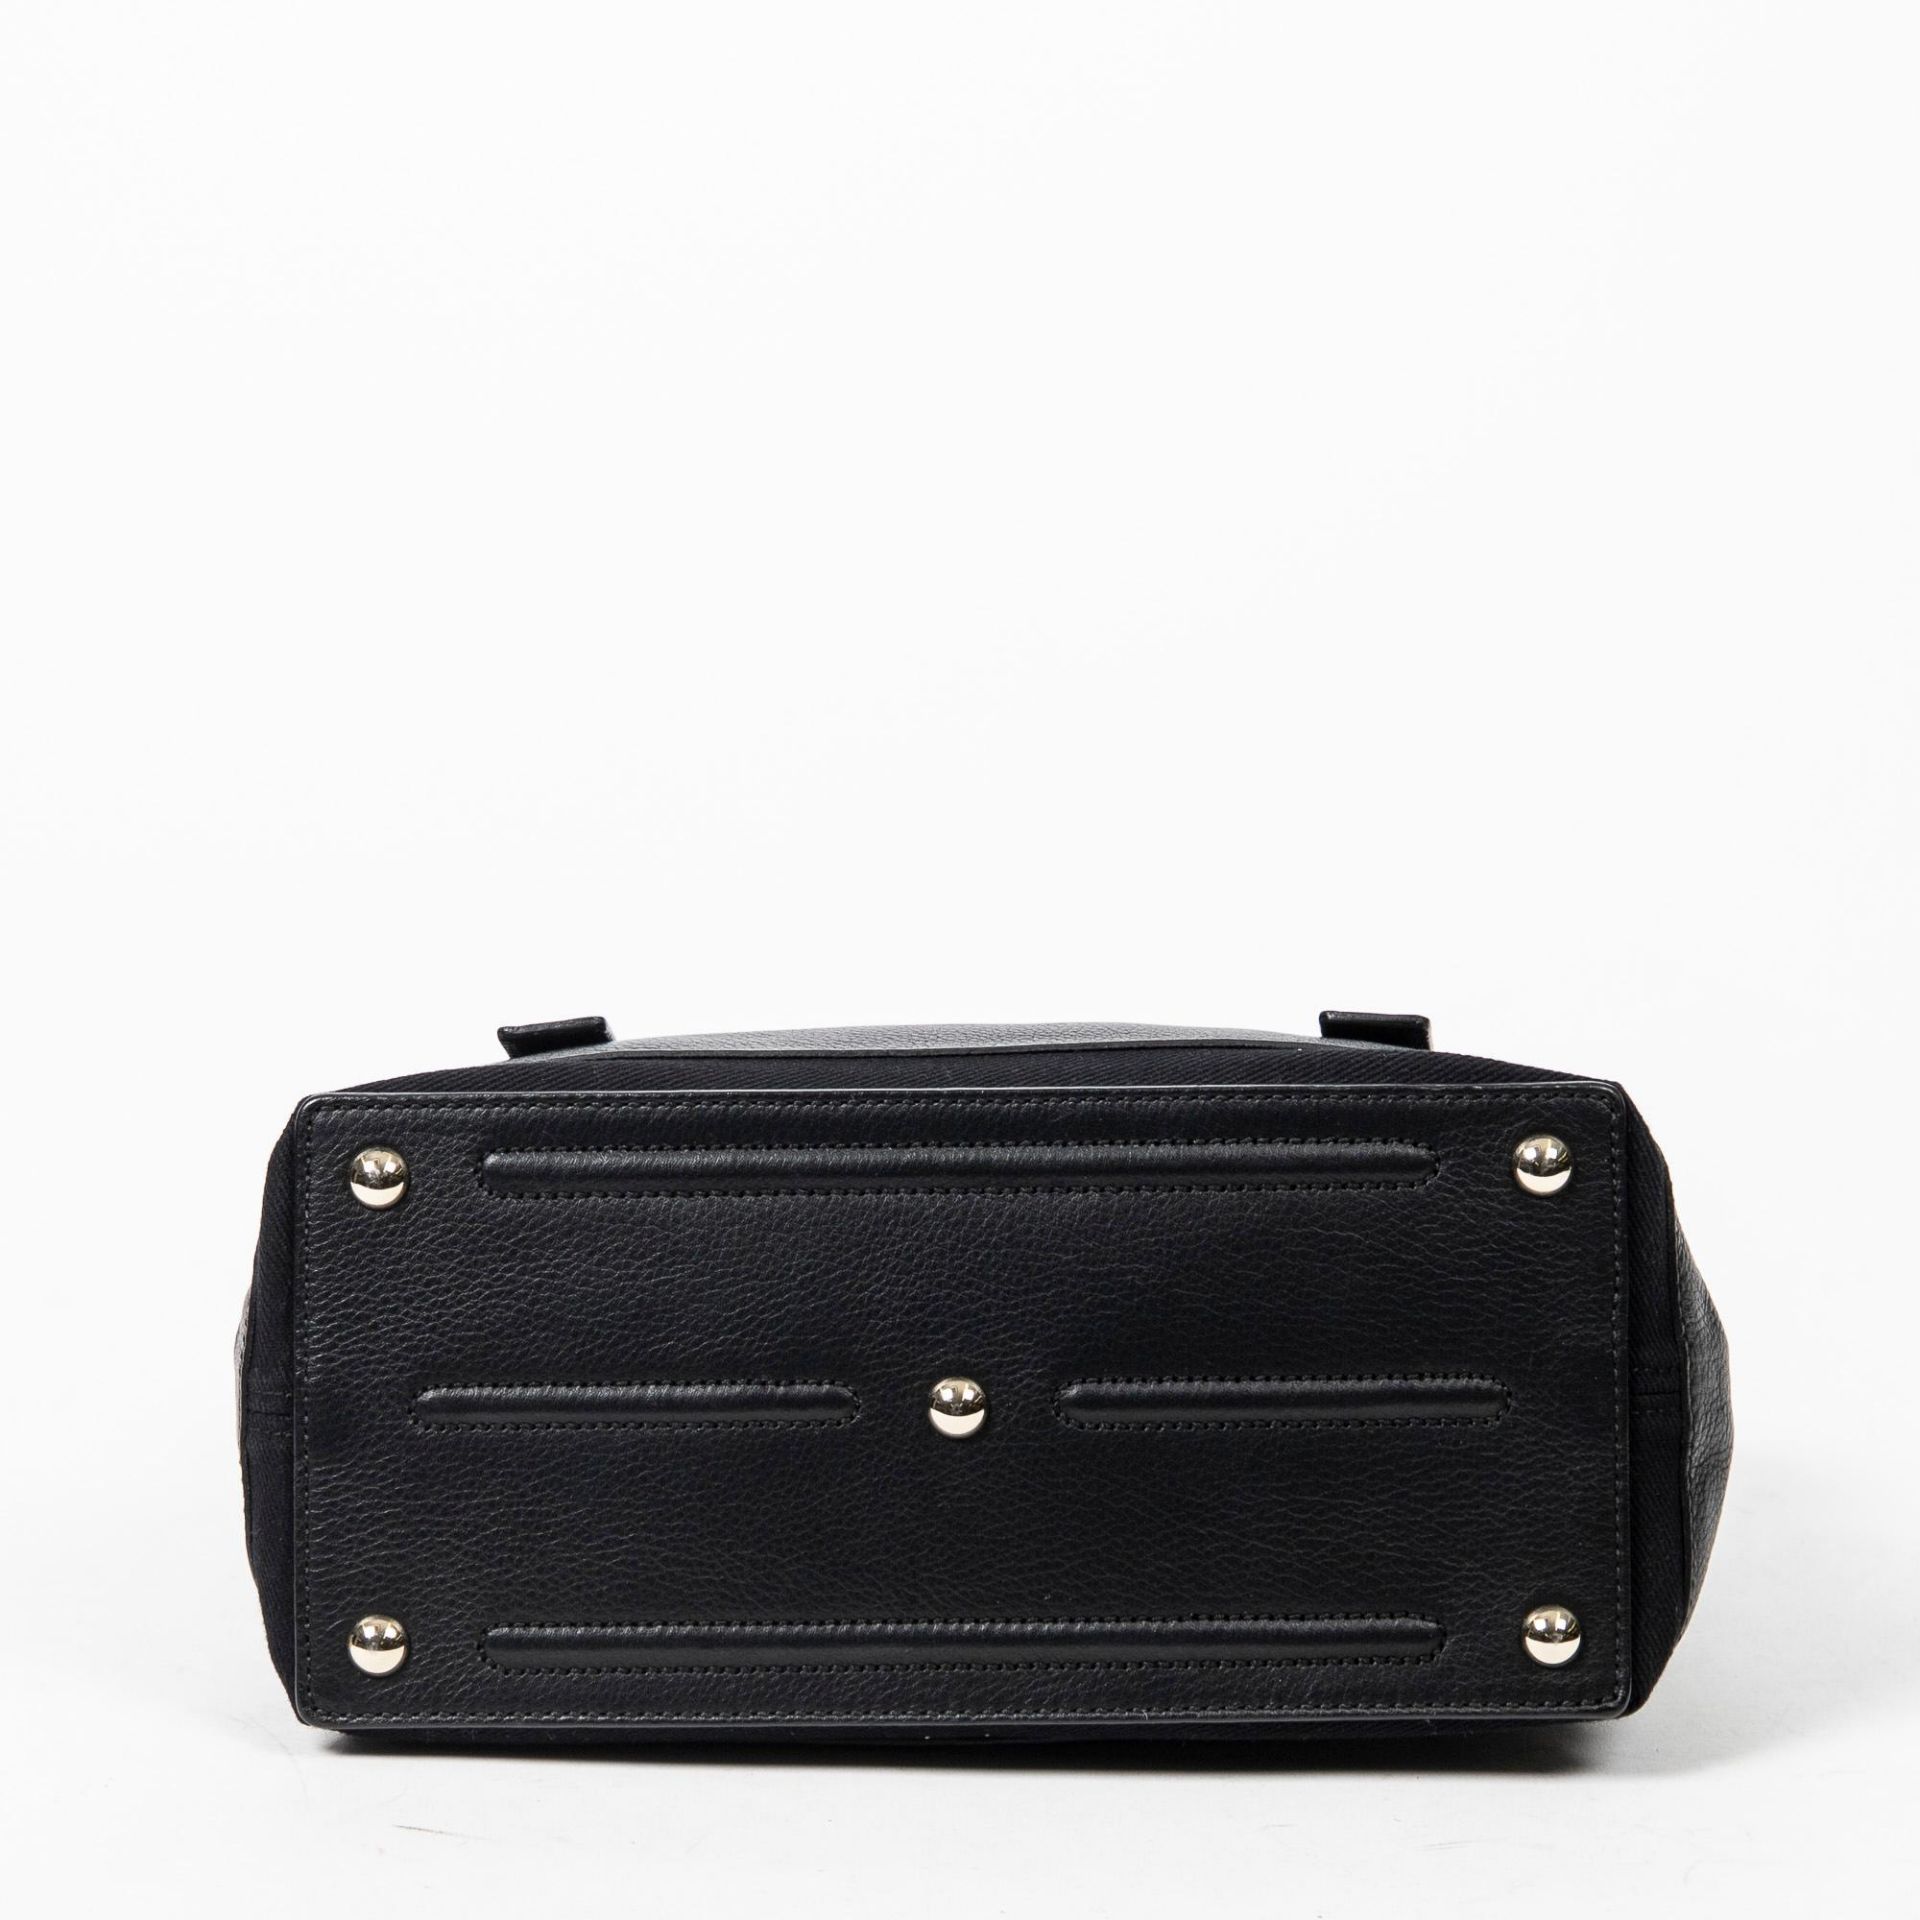 Yves St-Laurent Black Muse 2 Shoulder Bag - Image 5 of 15